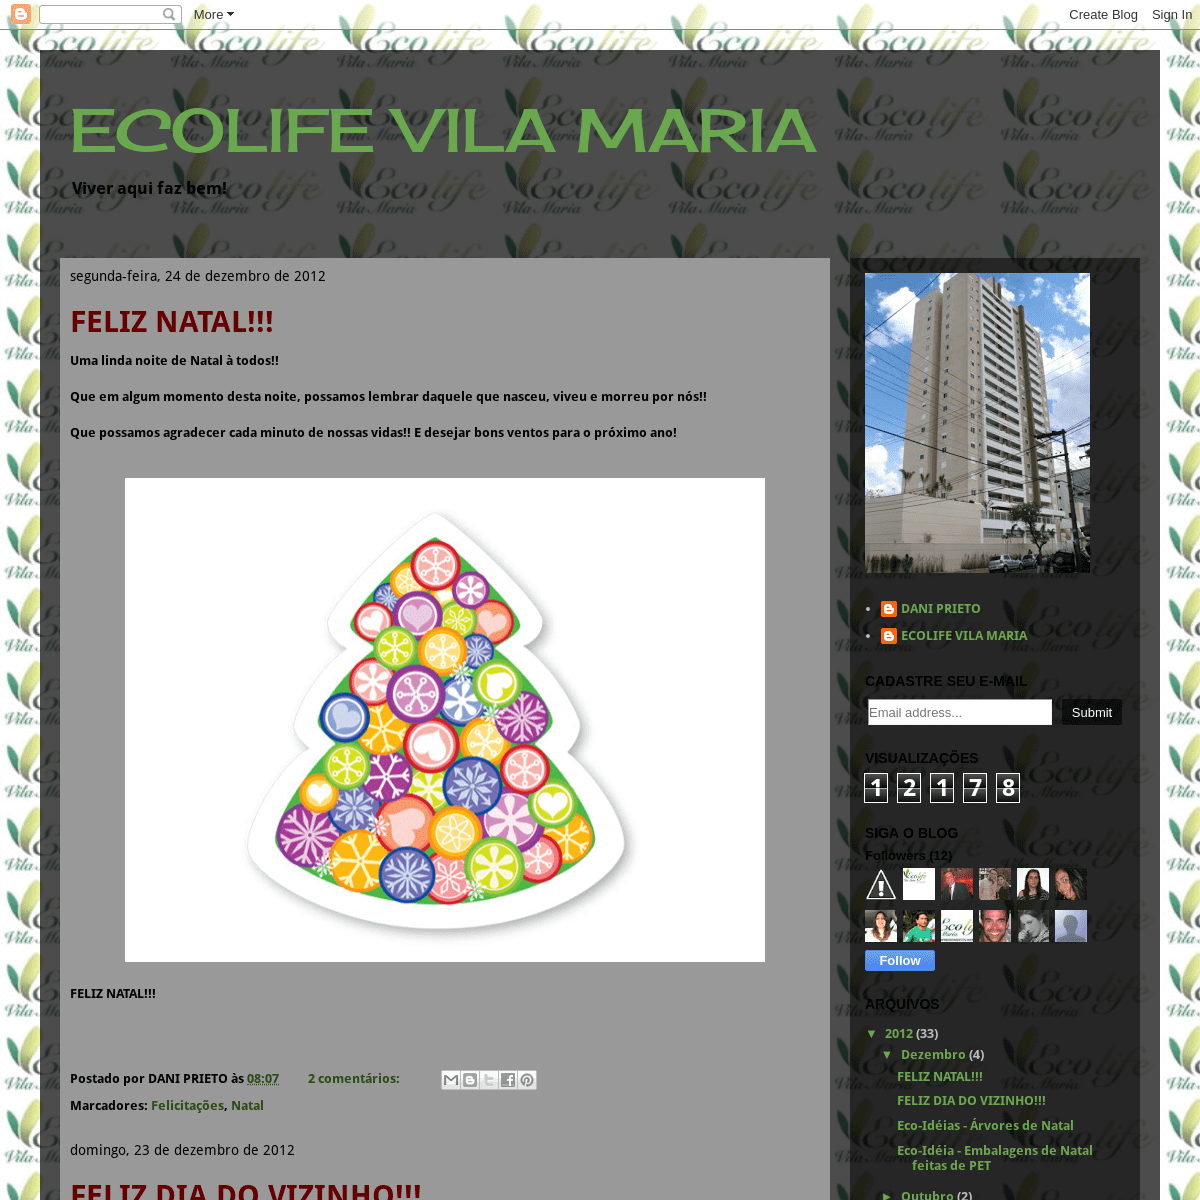 A complete backup of ecolifevilamaria.blogspot.com